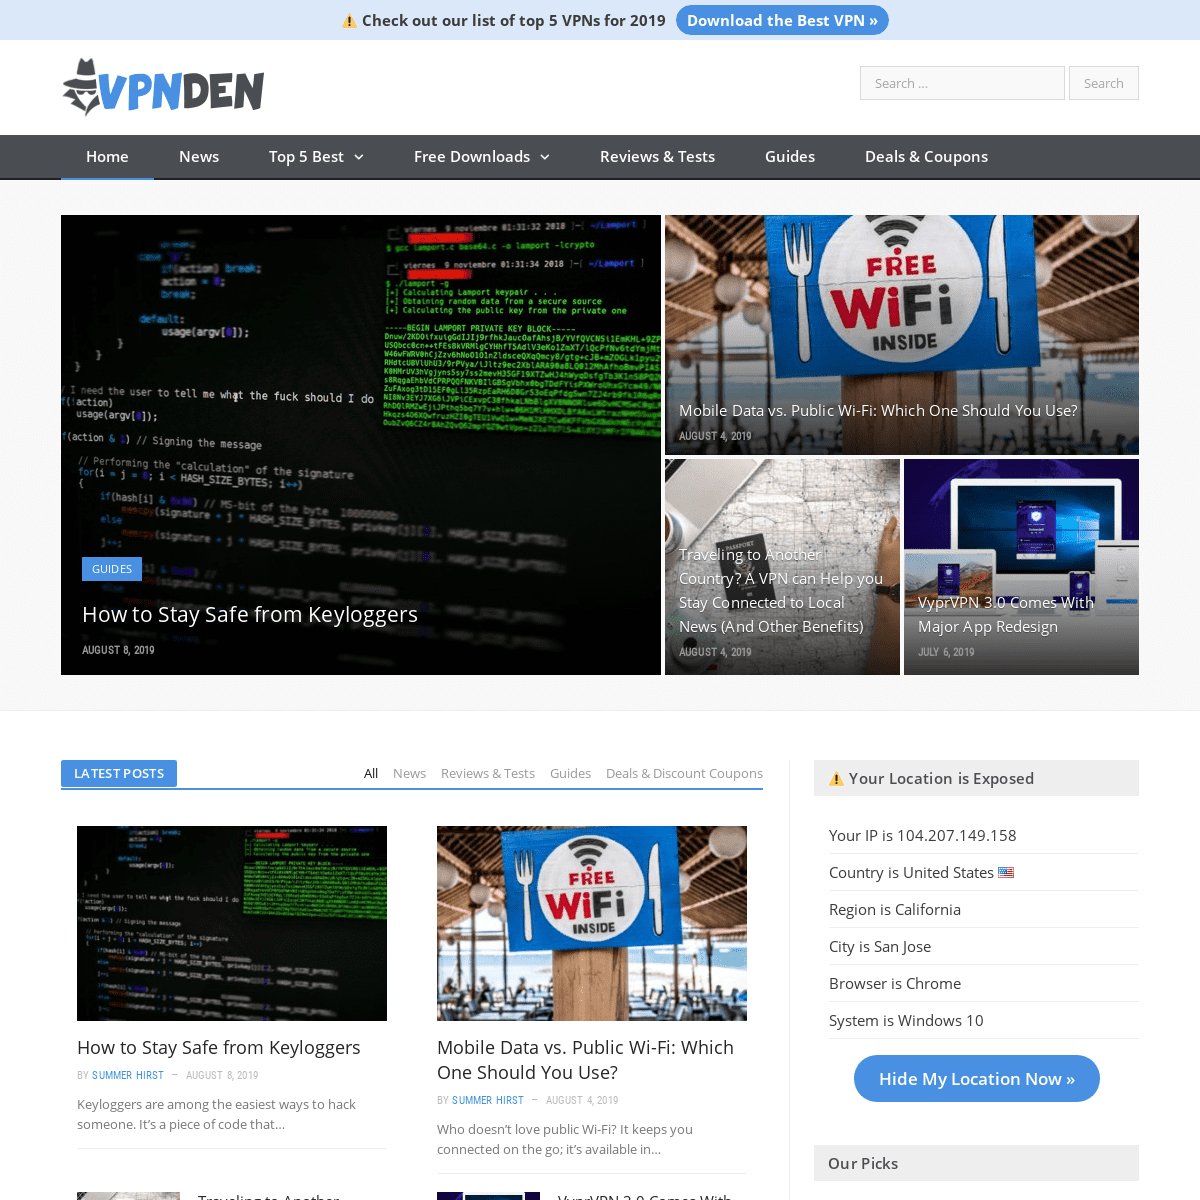 VPN Den – Your #1 Independent VPN Source for Reviews & Tests